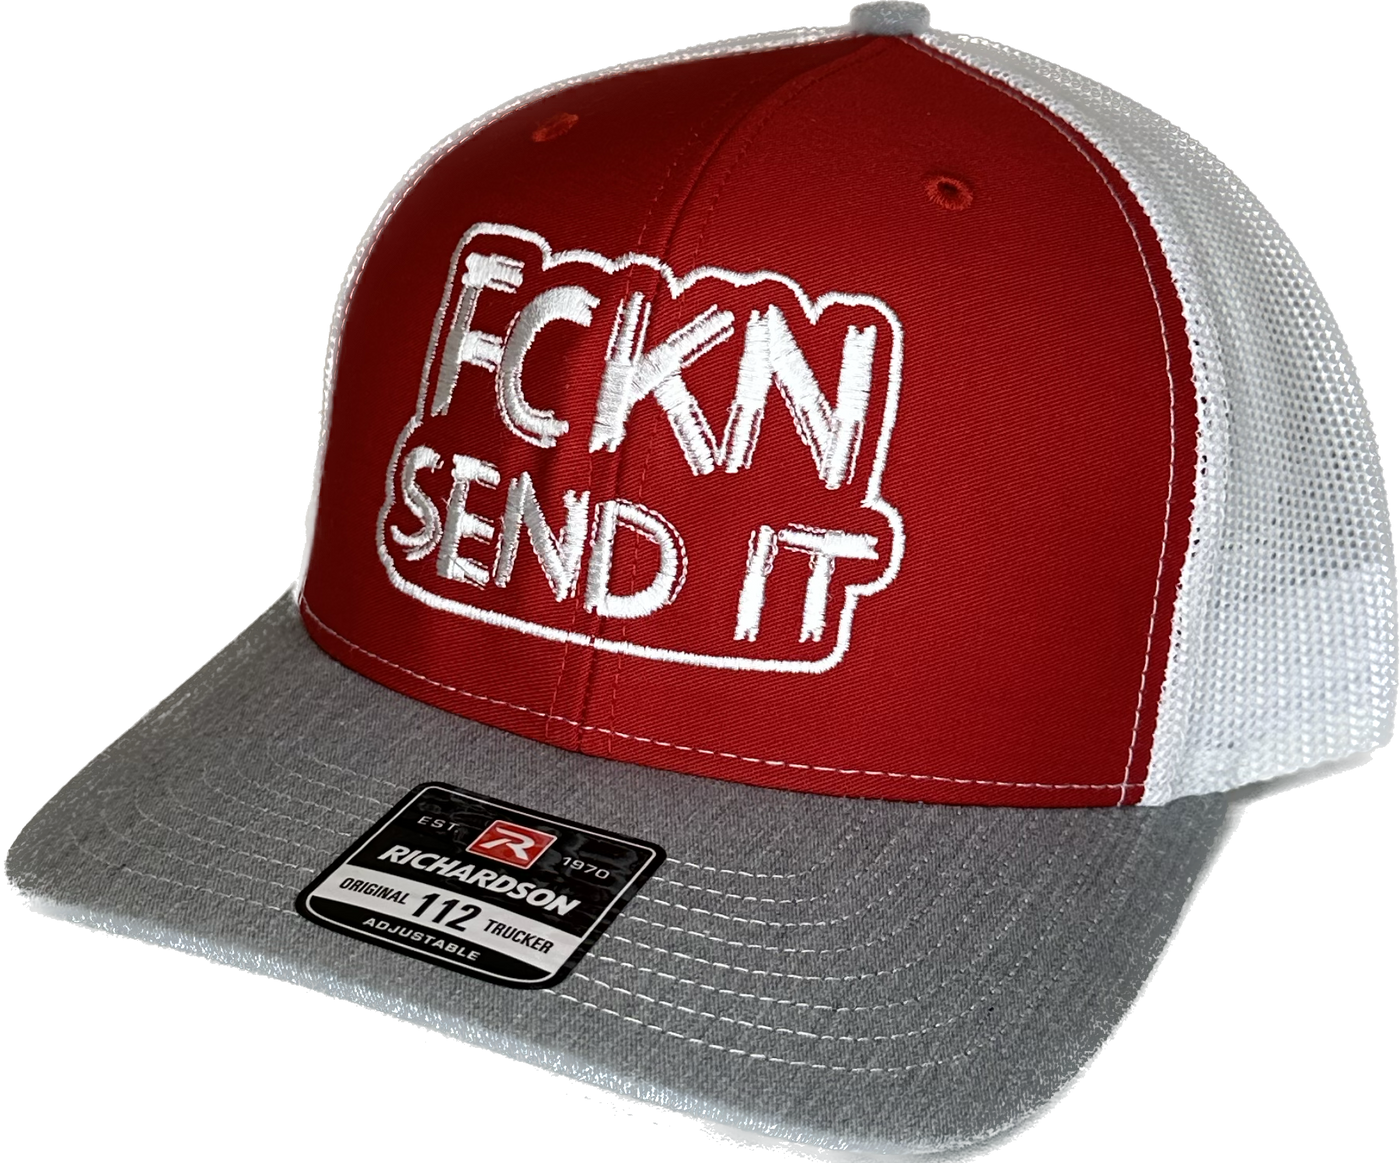 Hat - FCKN SEND IT Snapback Hat